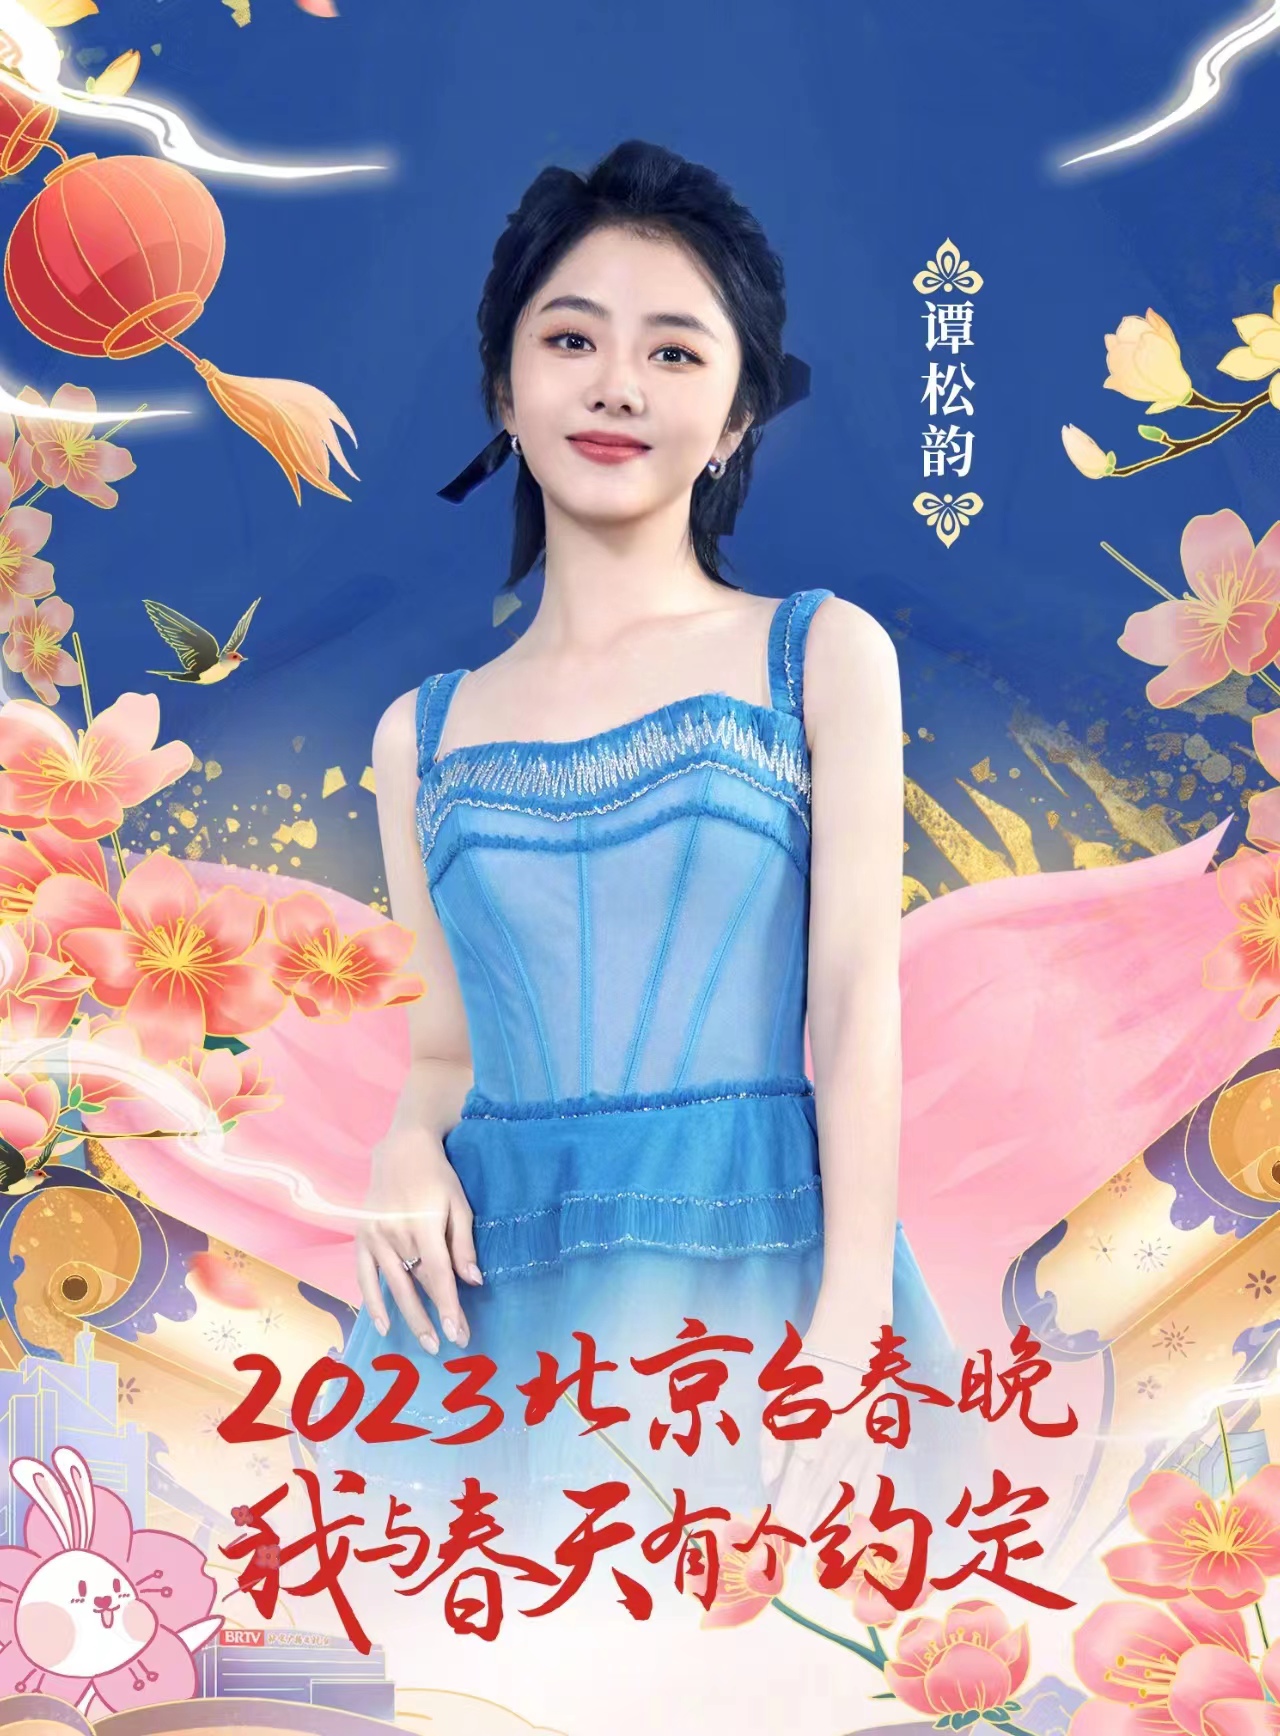 谭松韵北京台春晚造型释出,穿一条蓝色吊带裙,清新又甜美!